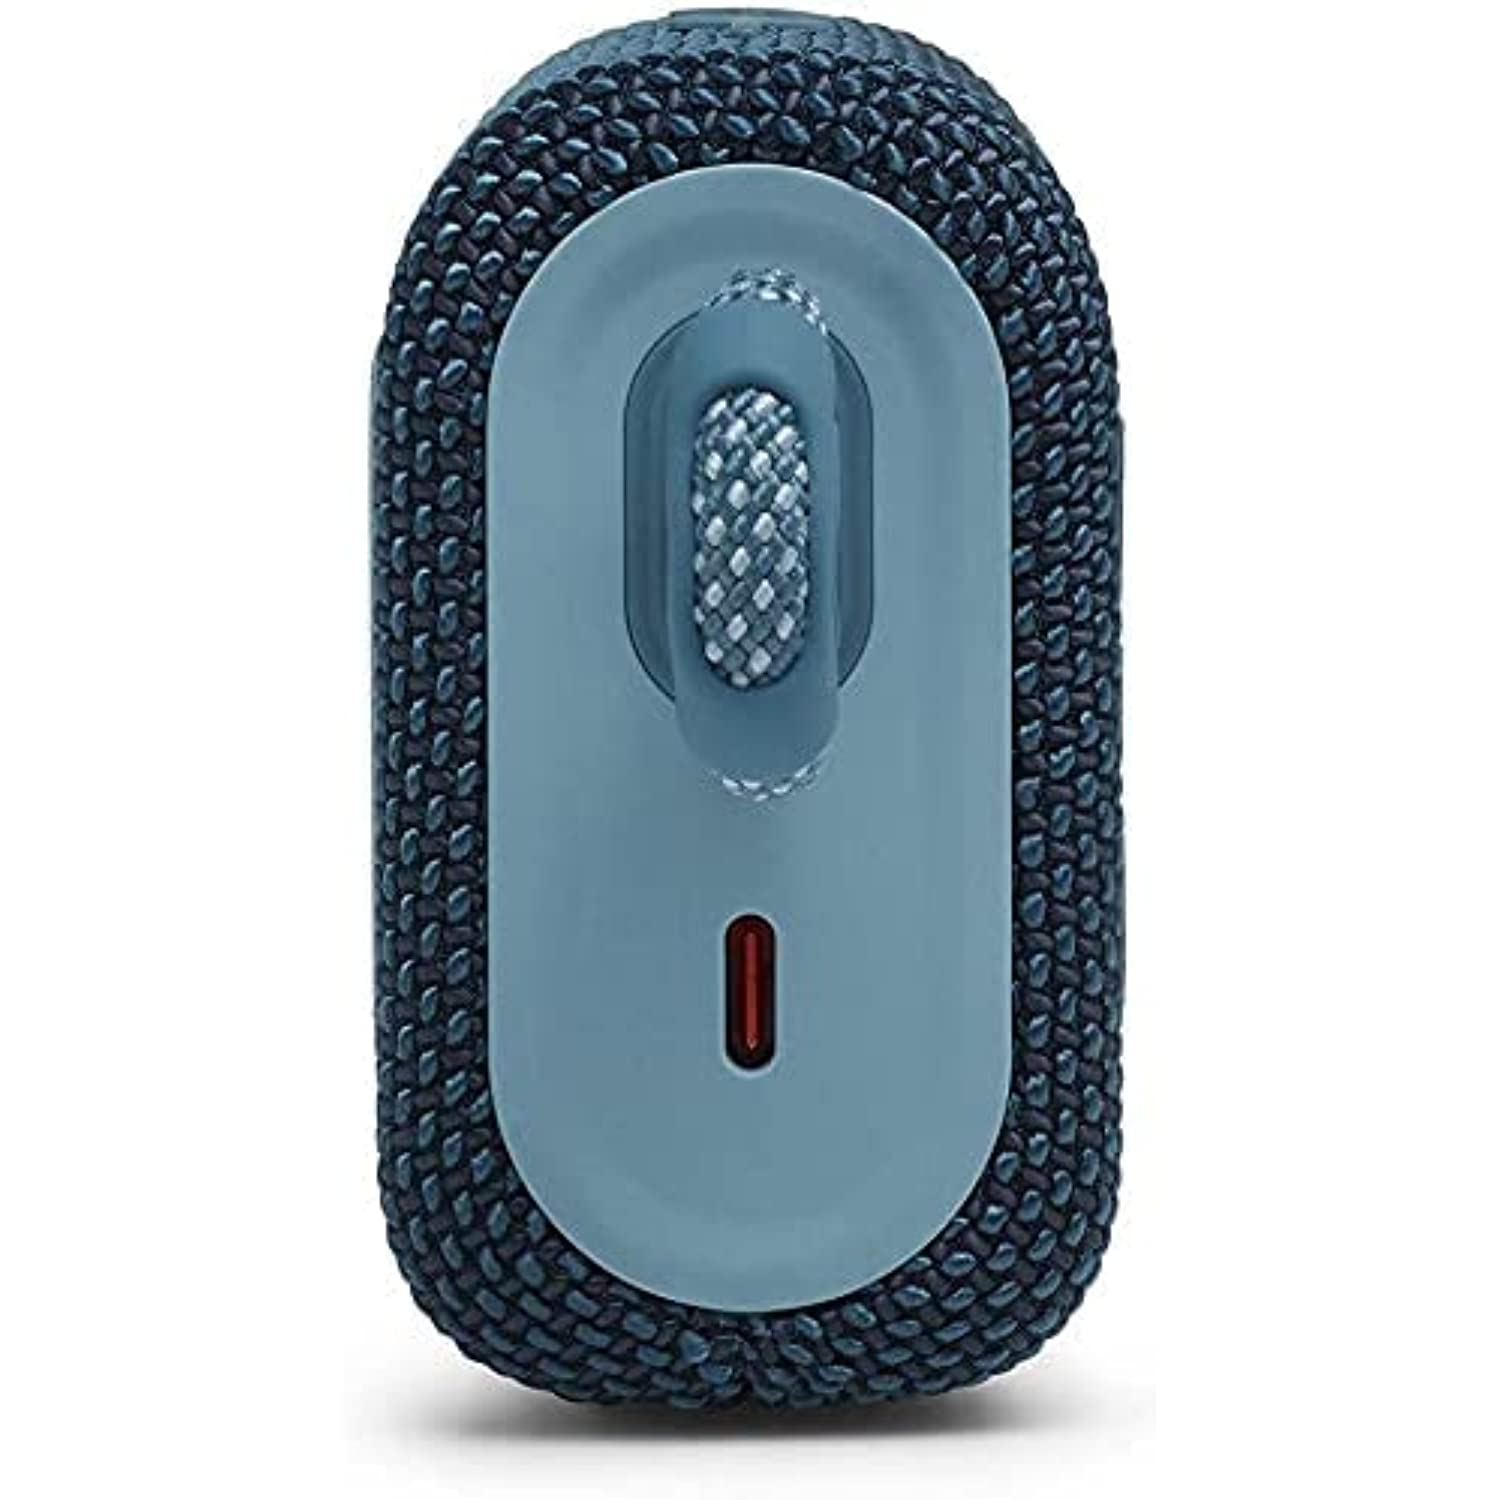 Restored JBL Go 3 Portable Waterproof & Dustproof IP67 Outdoor Wireless Bluetooth Speaker (Blue) (Refurbished) - image 5 of 9